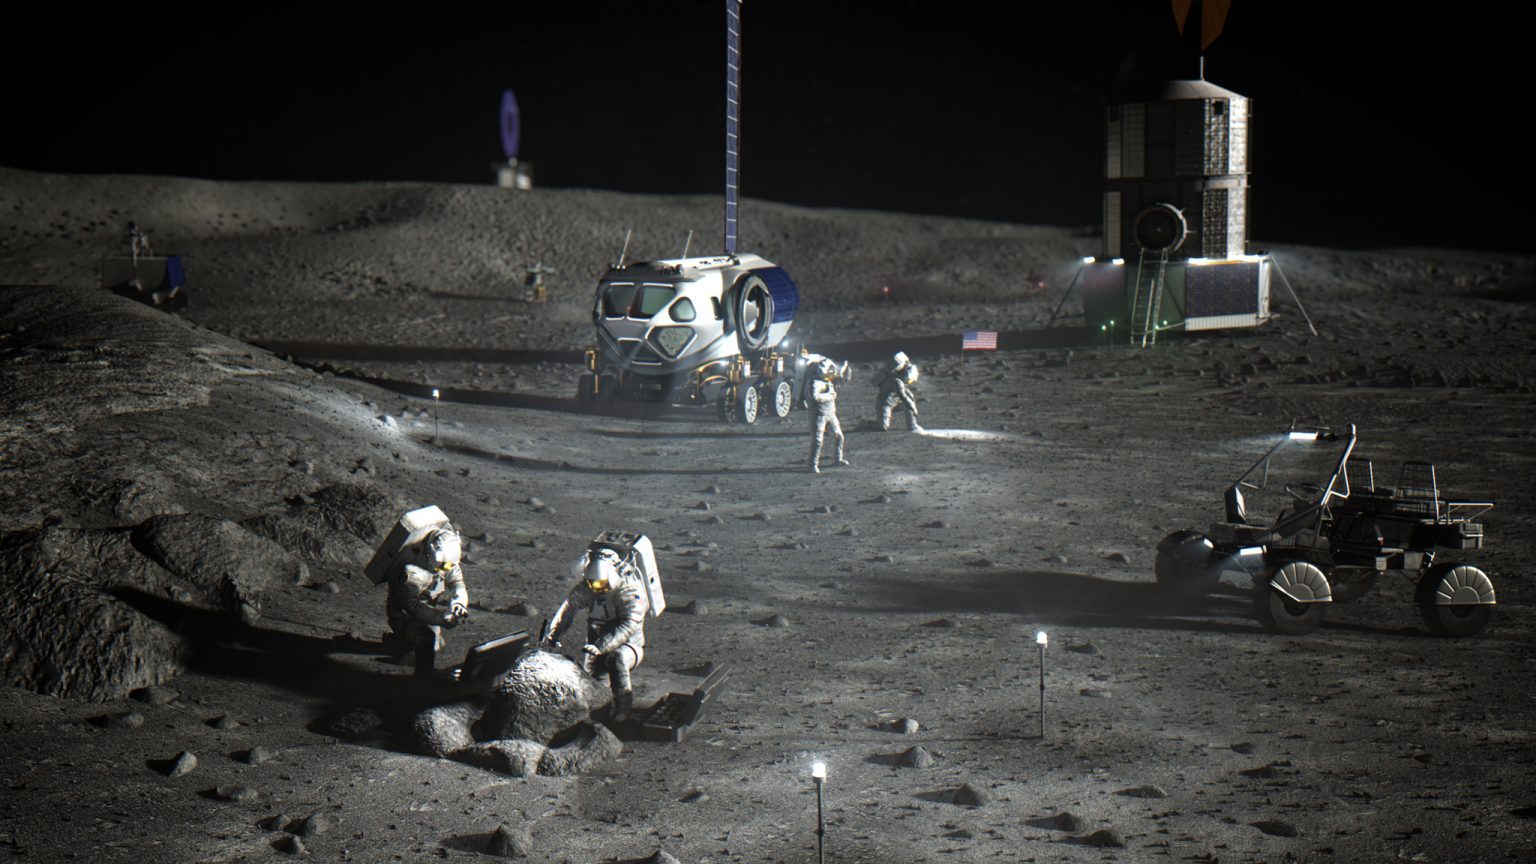 Rappresentazione artistica degli astronauti della NASA al polo sud lunare che svolgono i primi lavori per stabilire il campo base di Artemis.